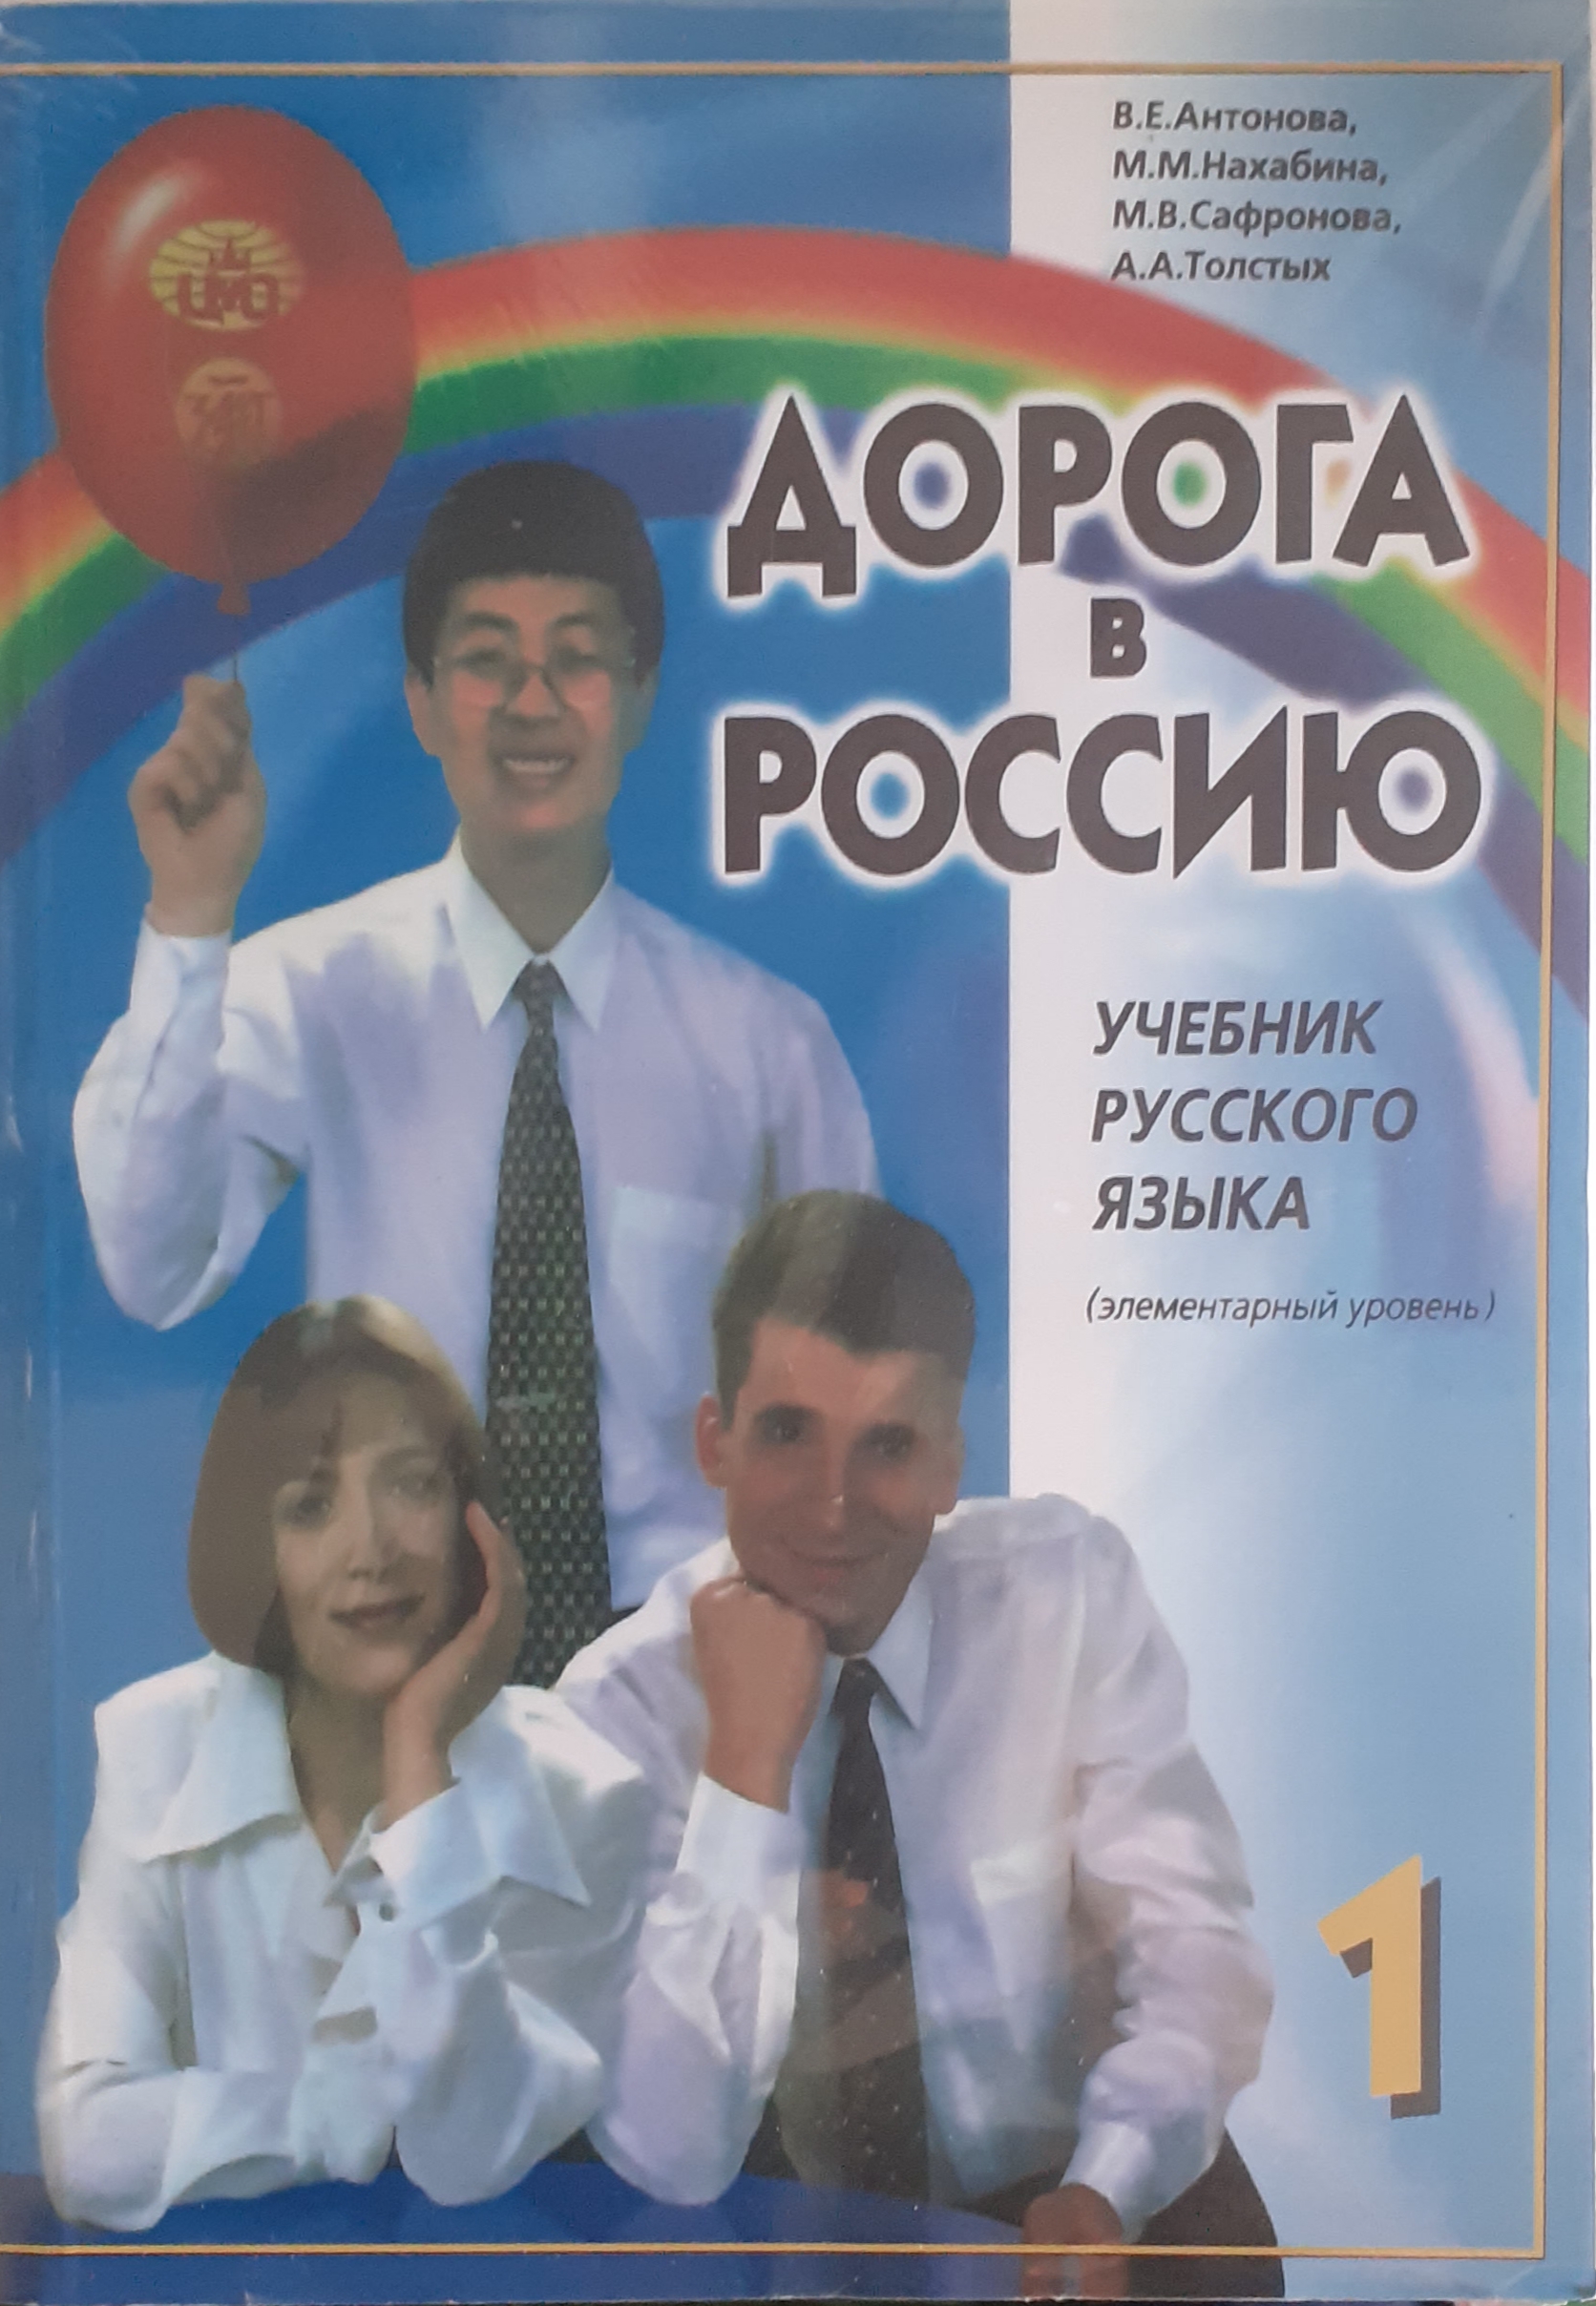 Aopora B Poccnio 1 کتاب